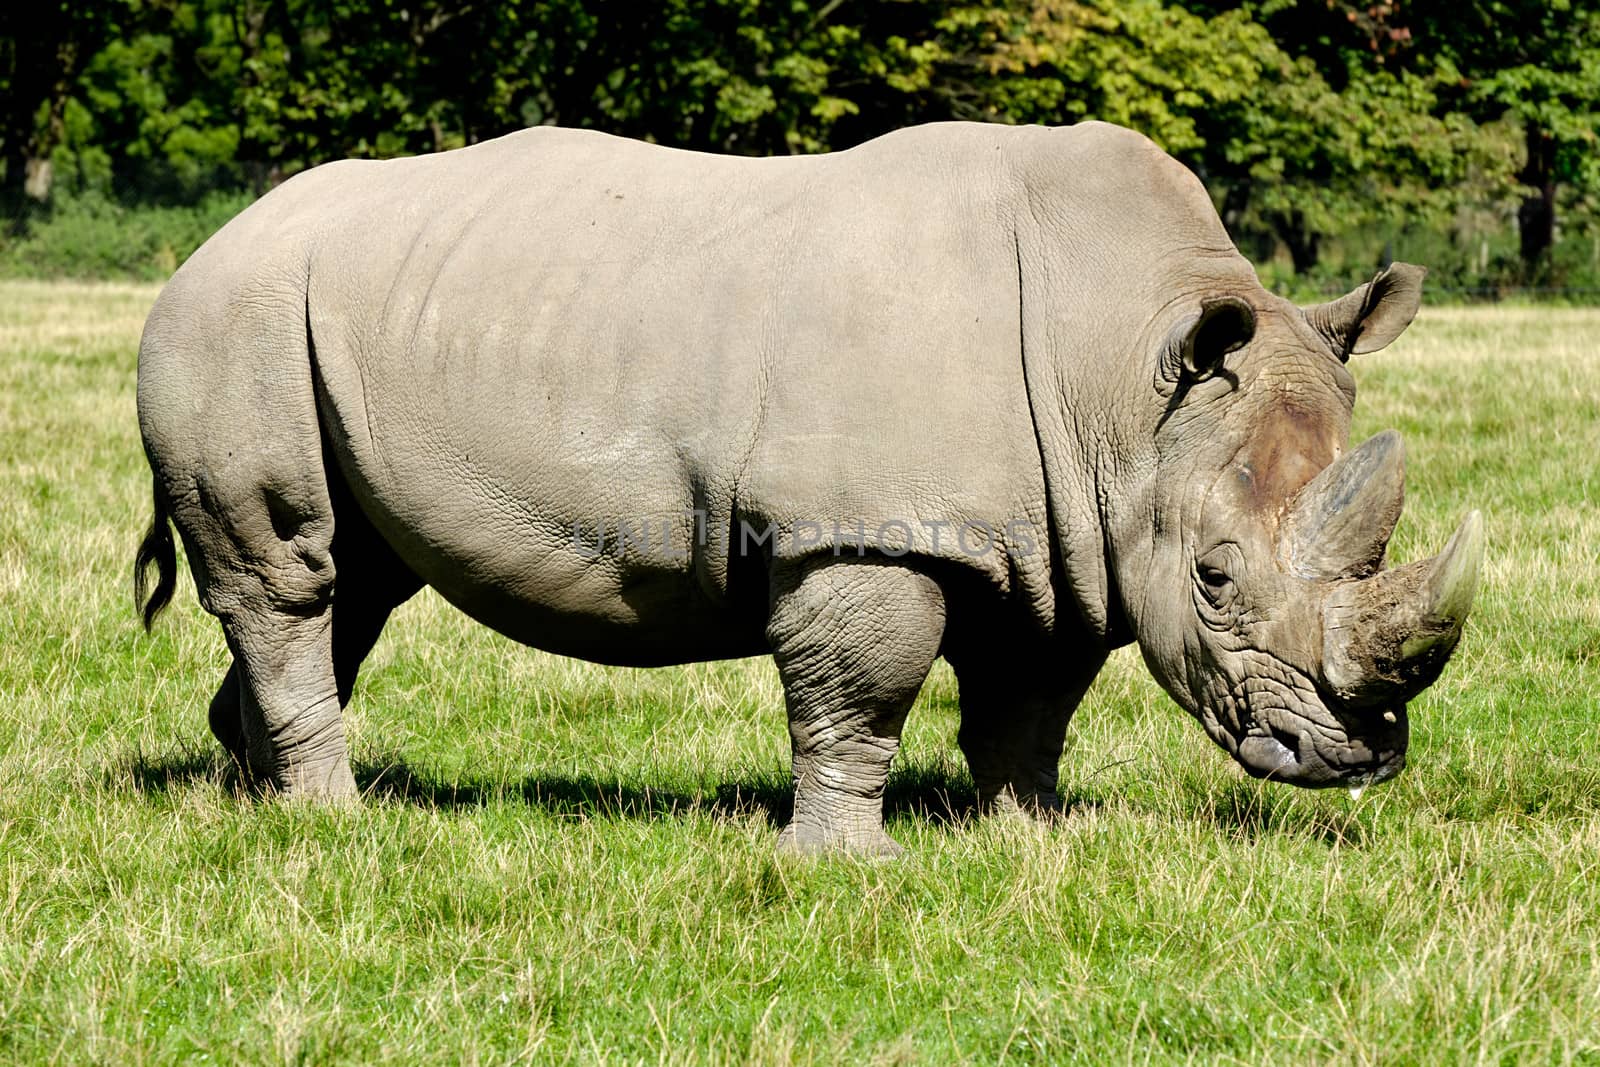 Rhino by cfoto